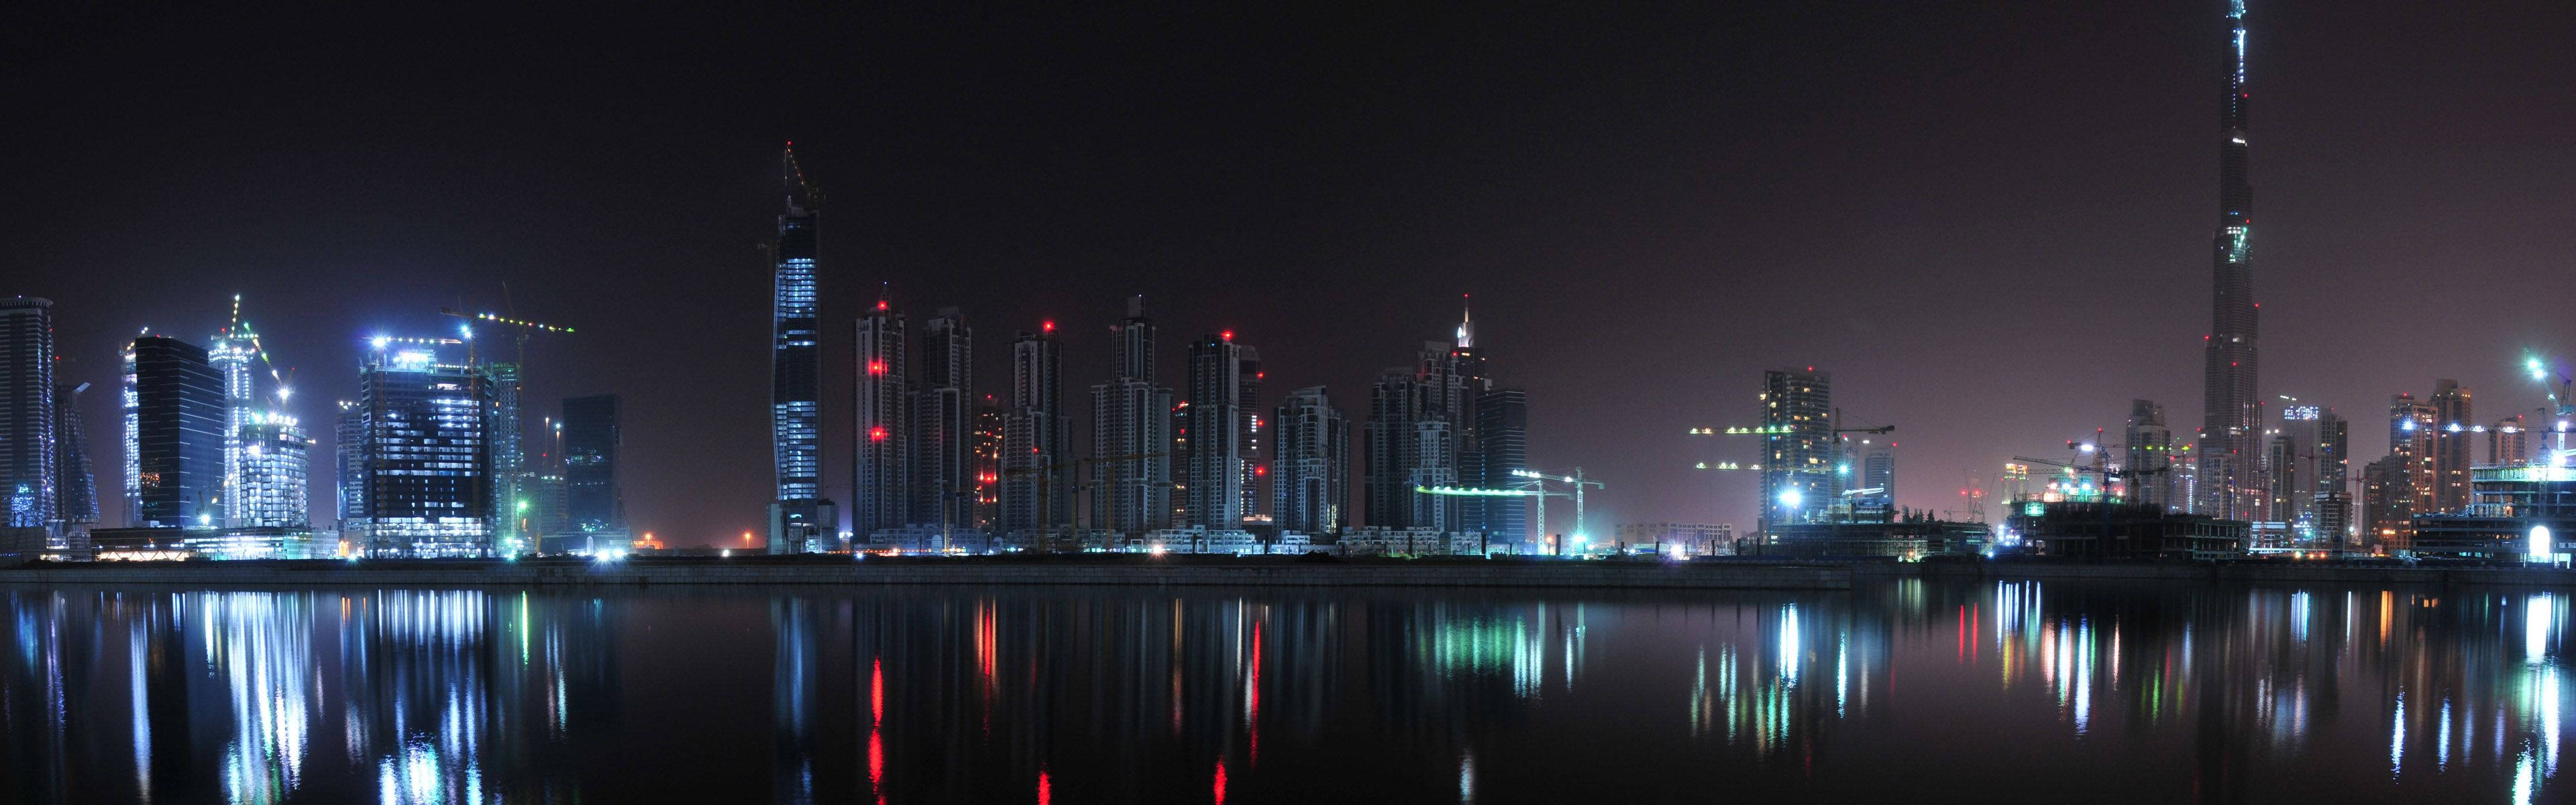 Dubaiskyline På Natten För Monitor. Wallpaper